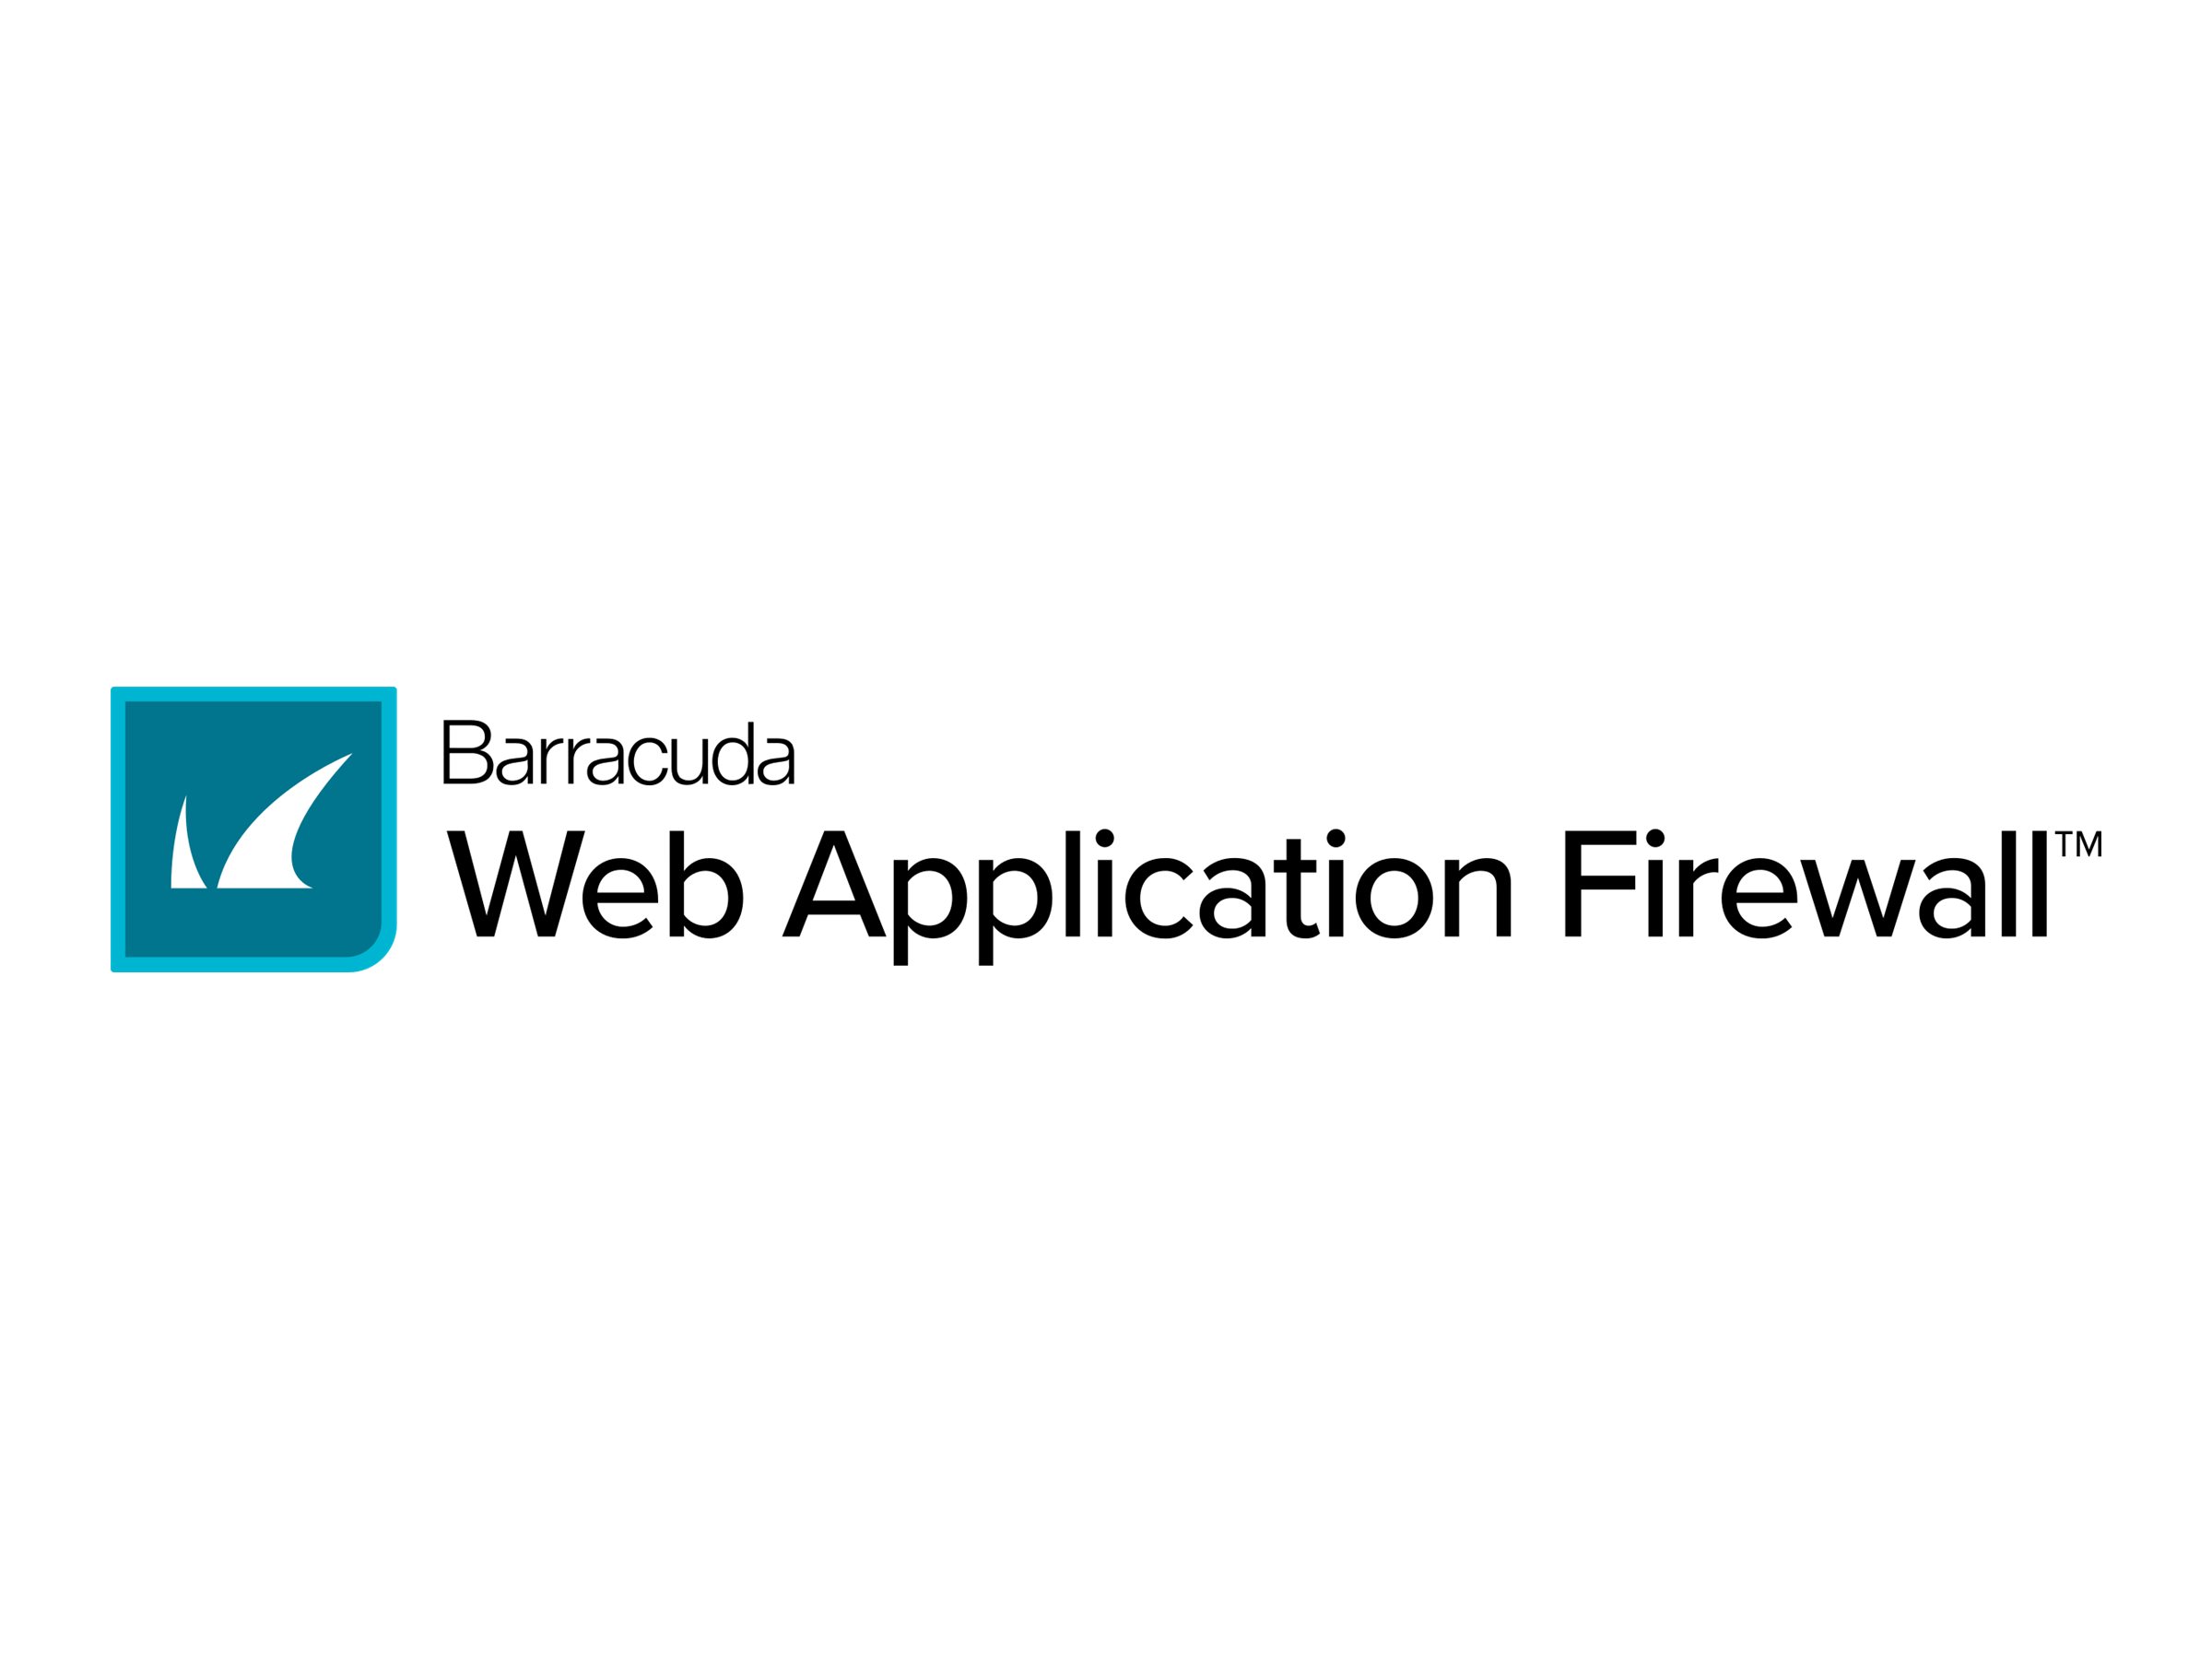 Barracuda Web Application Firewall Global Edition